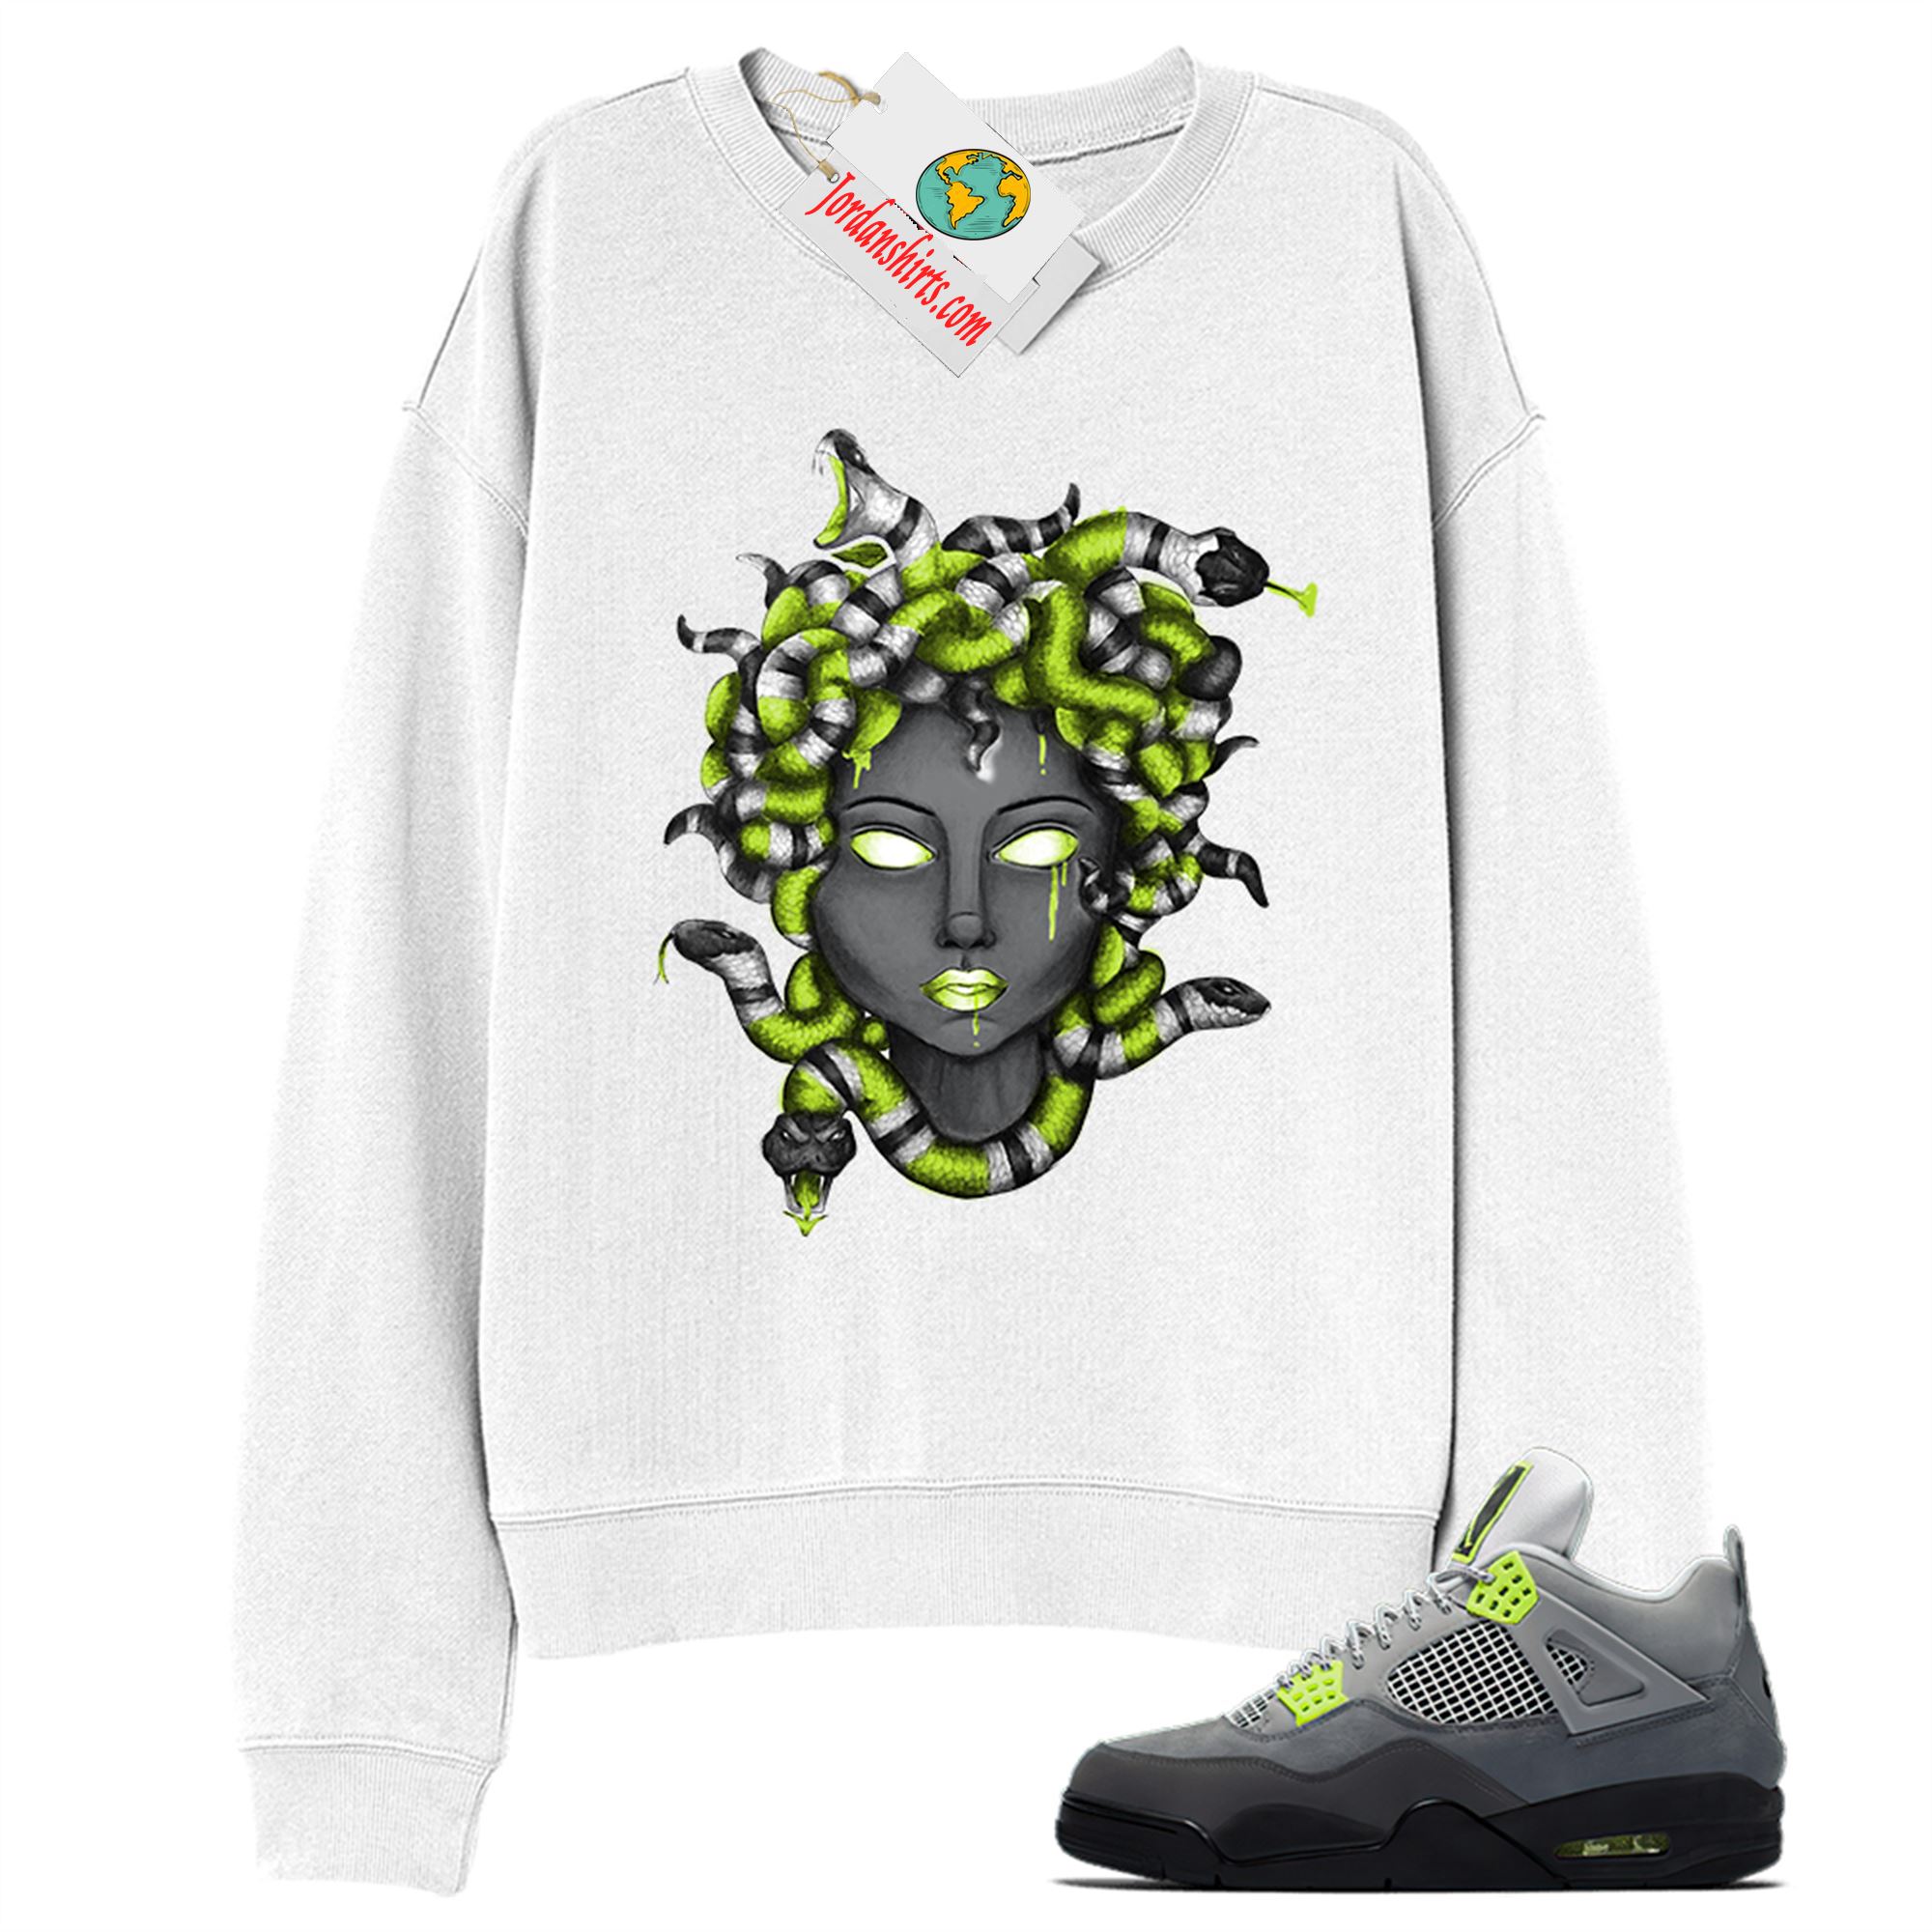 Jordan 4 Sweatshirt, Medusa Snake Hair White Sweatshirt Air Jordan 4 Neon 95 4s Size Up To 5xl